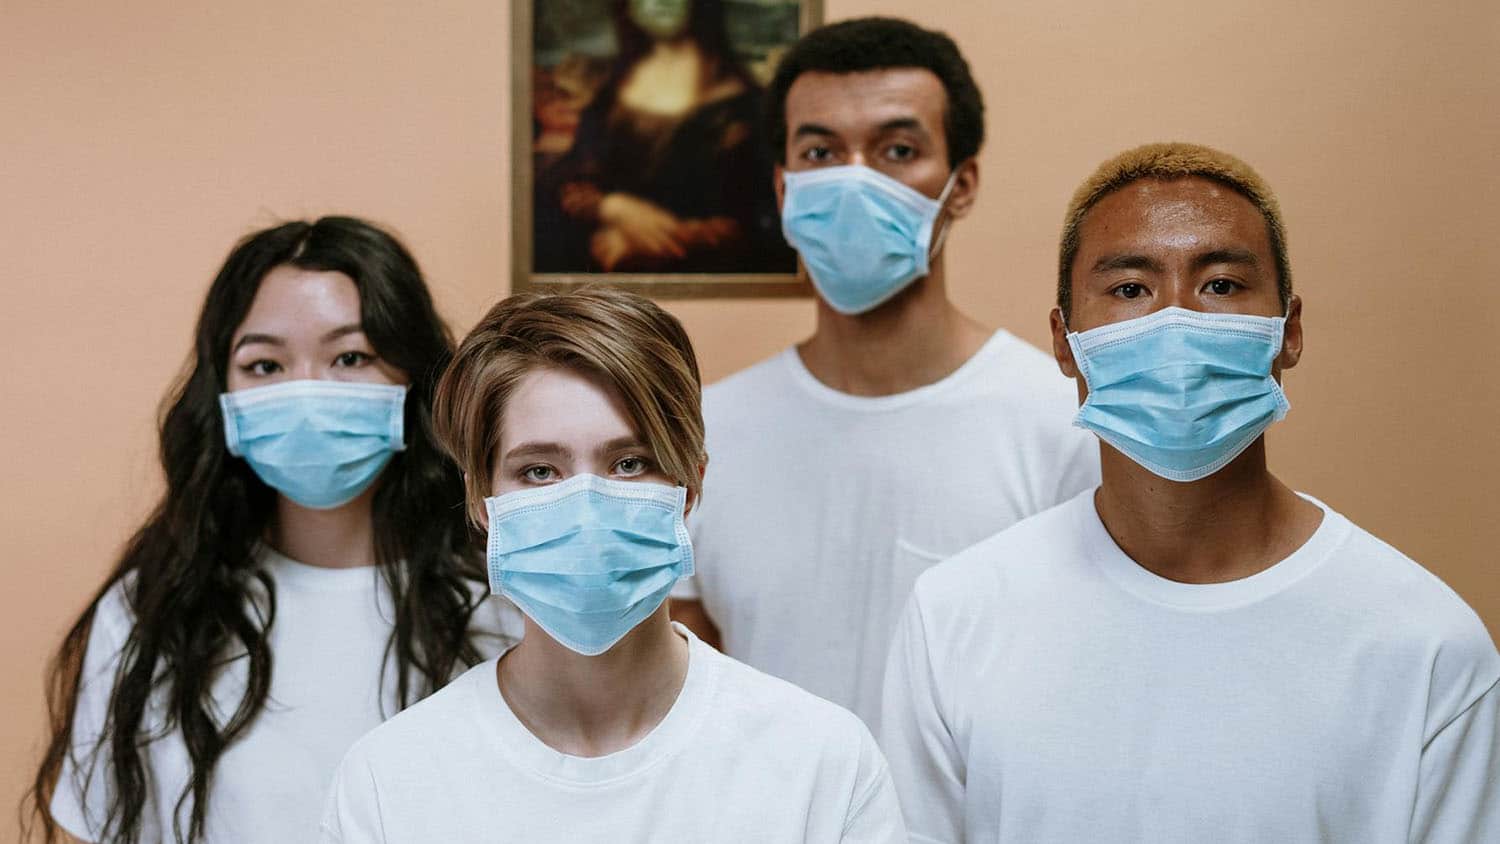 四位不同种族背景的青年站在一起戴掩鼻口罩